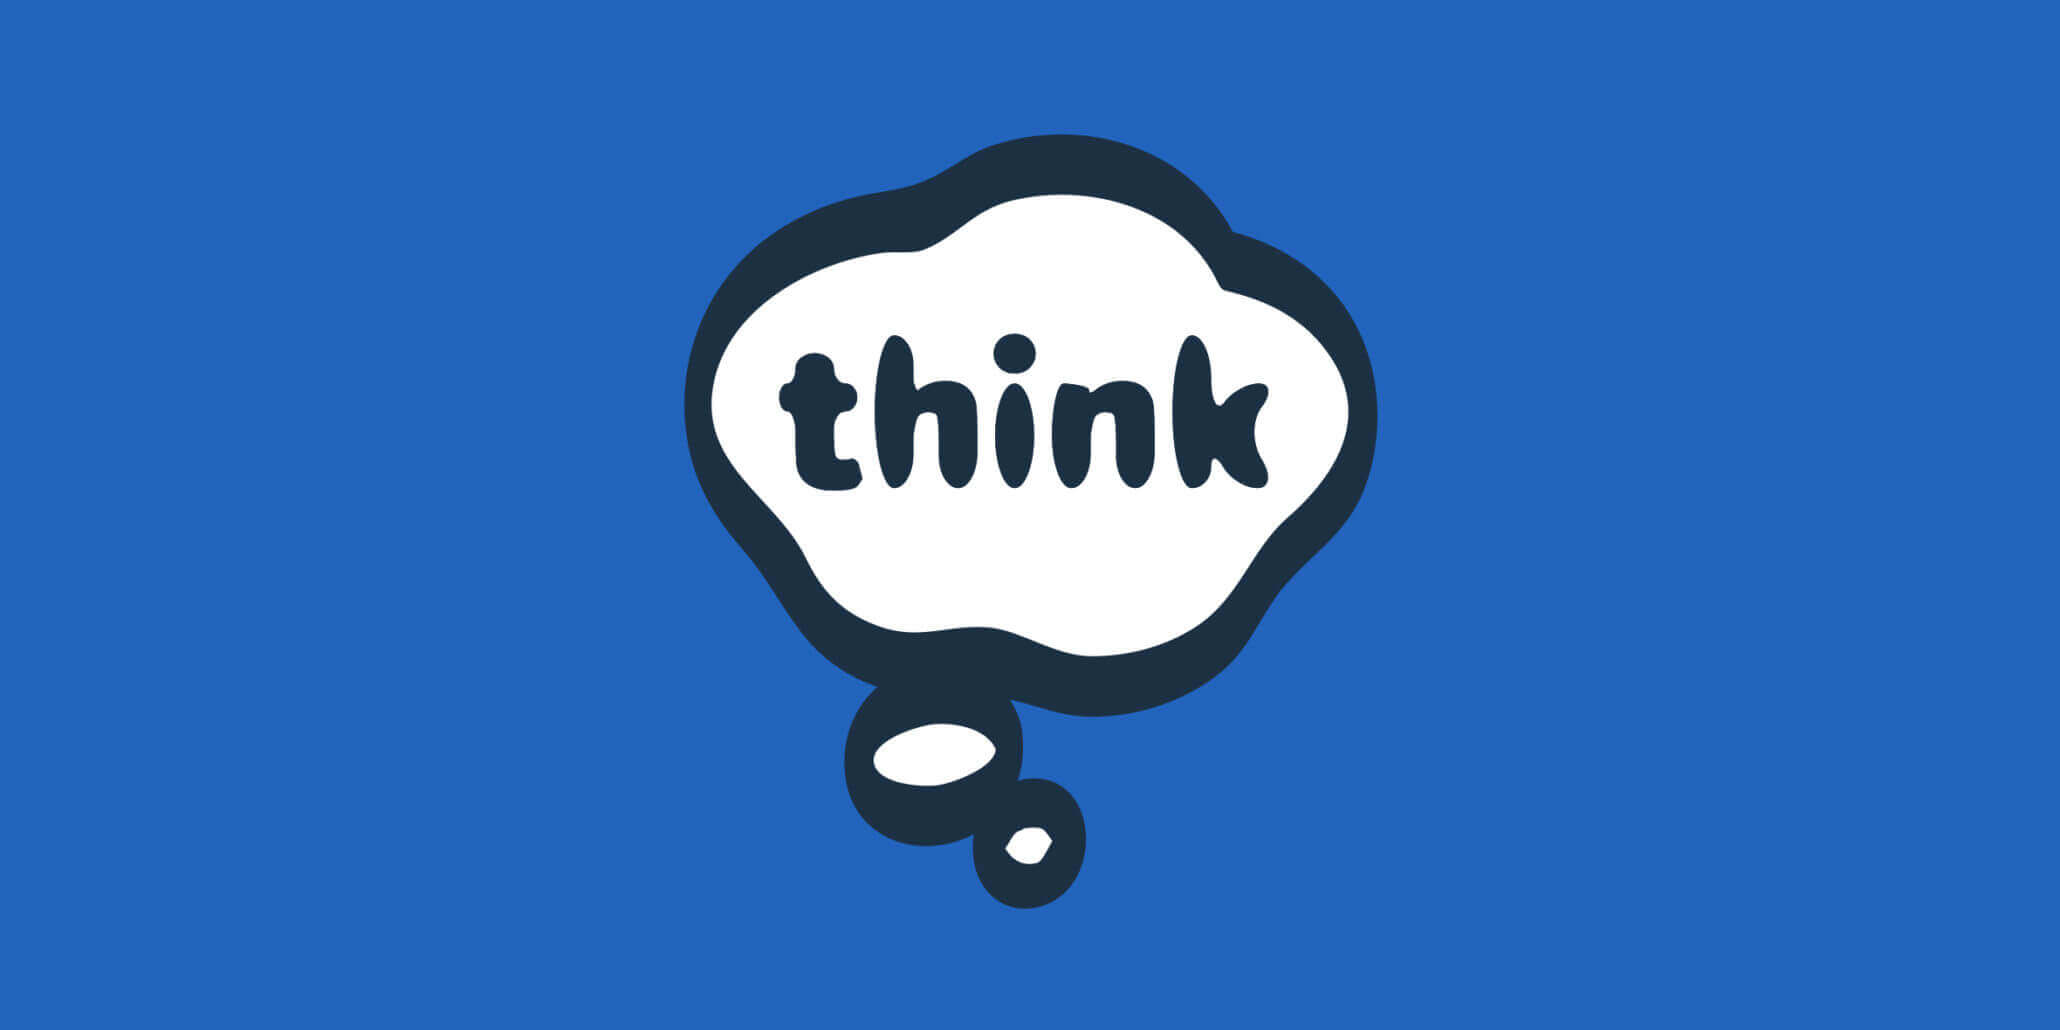 Think Company logo